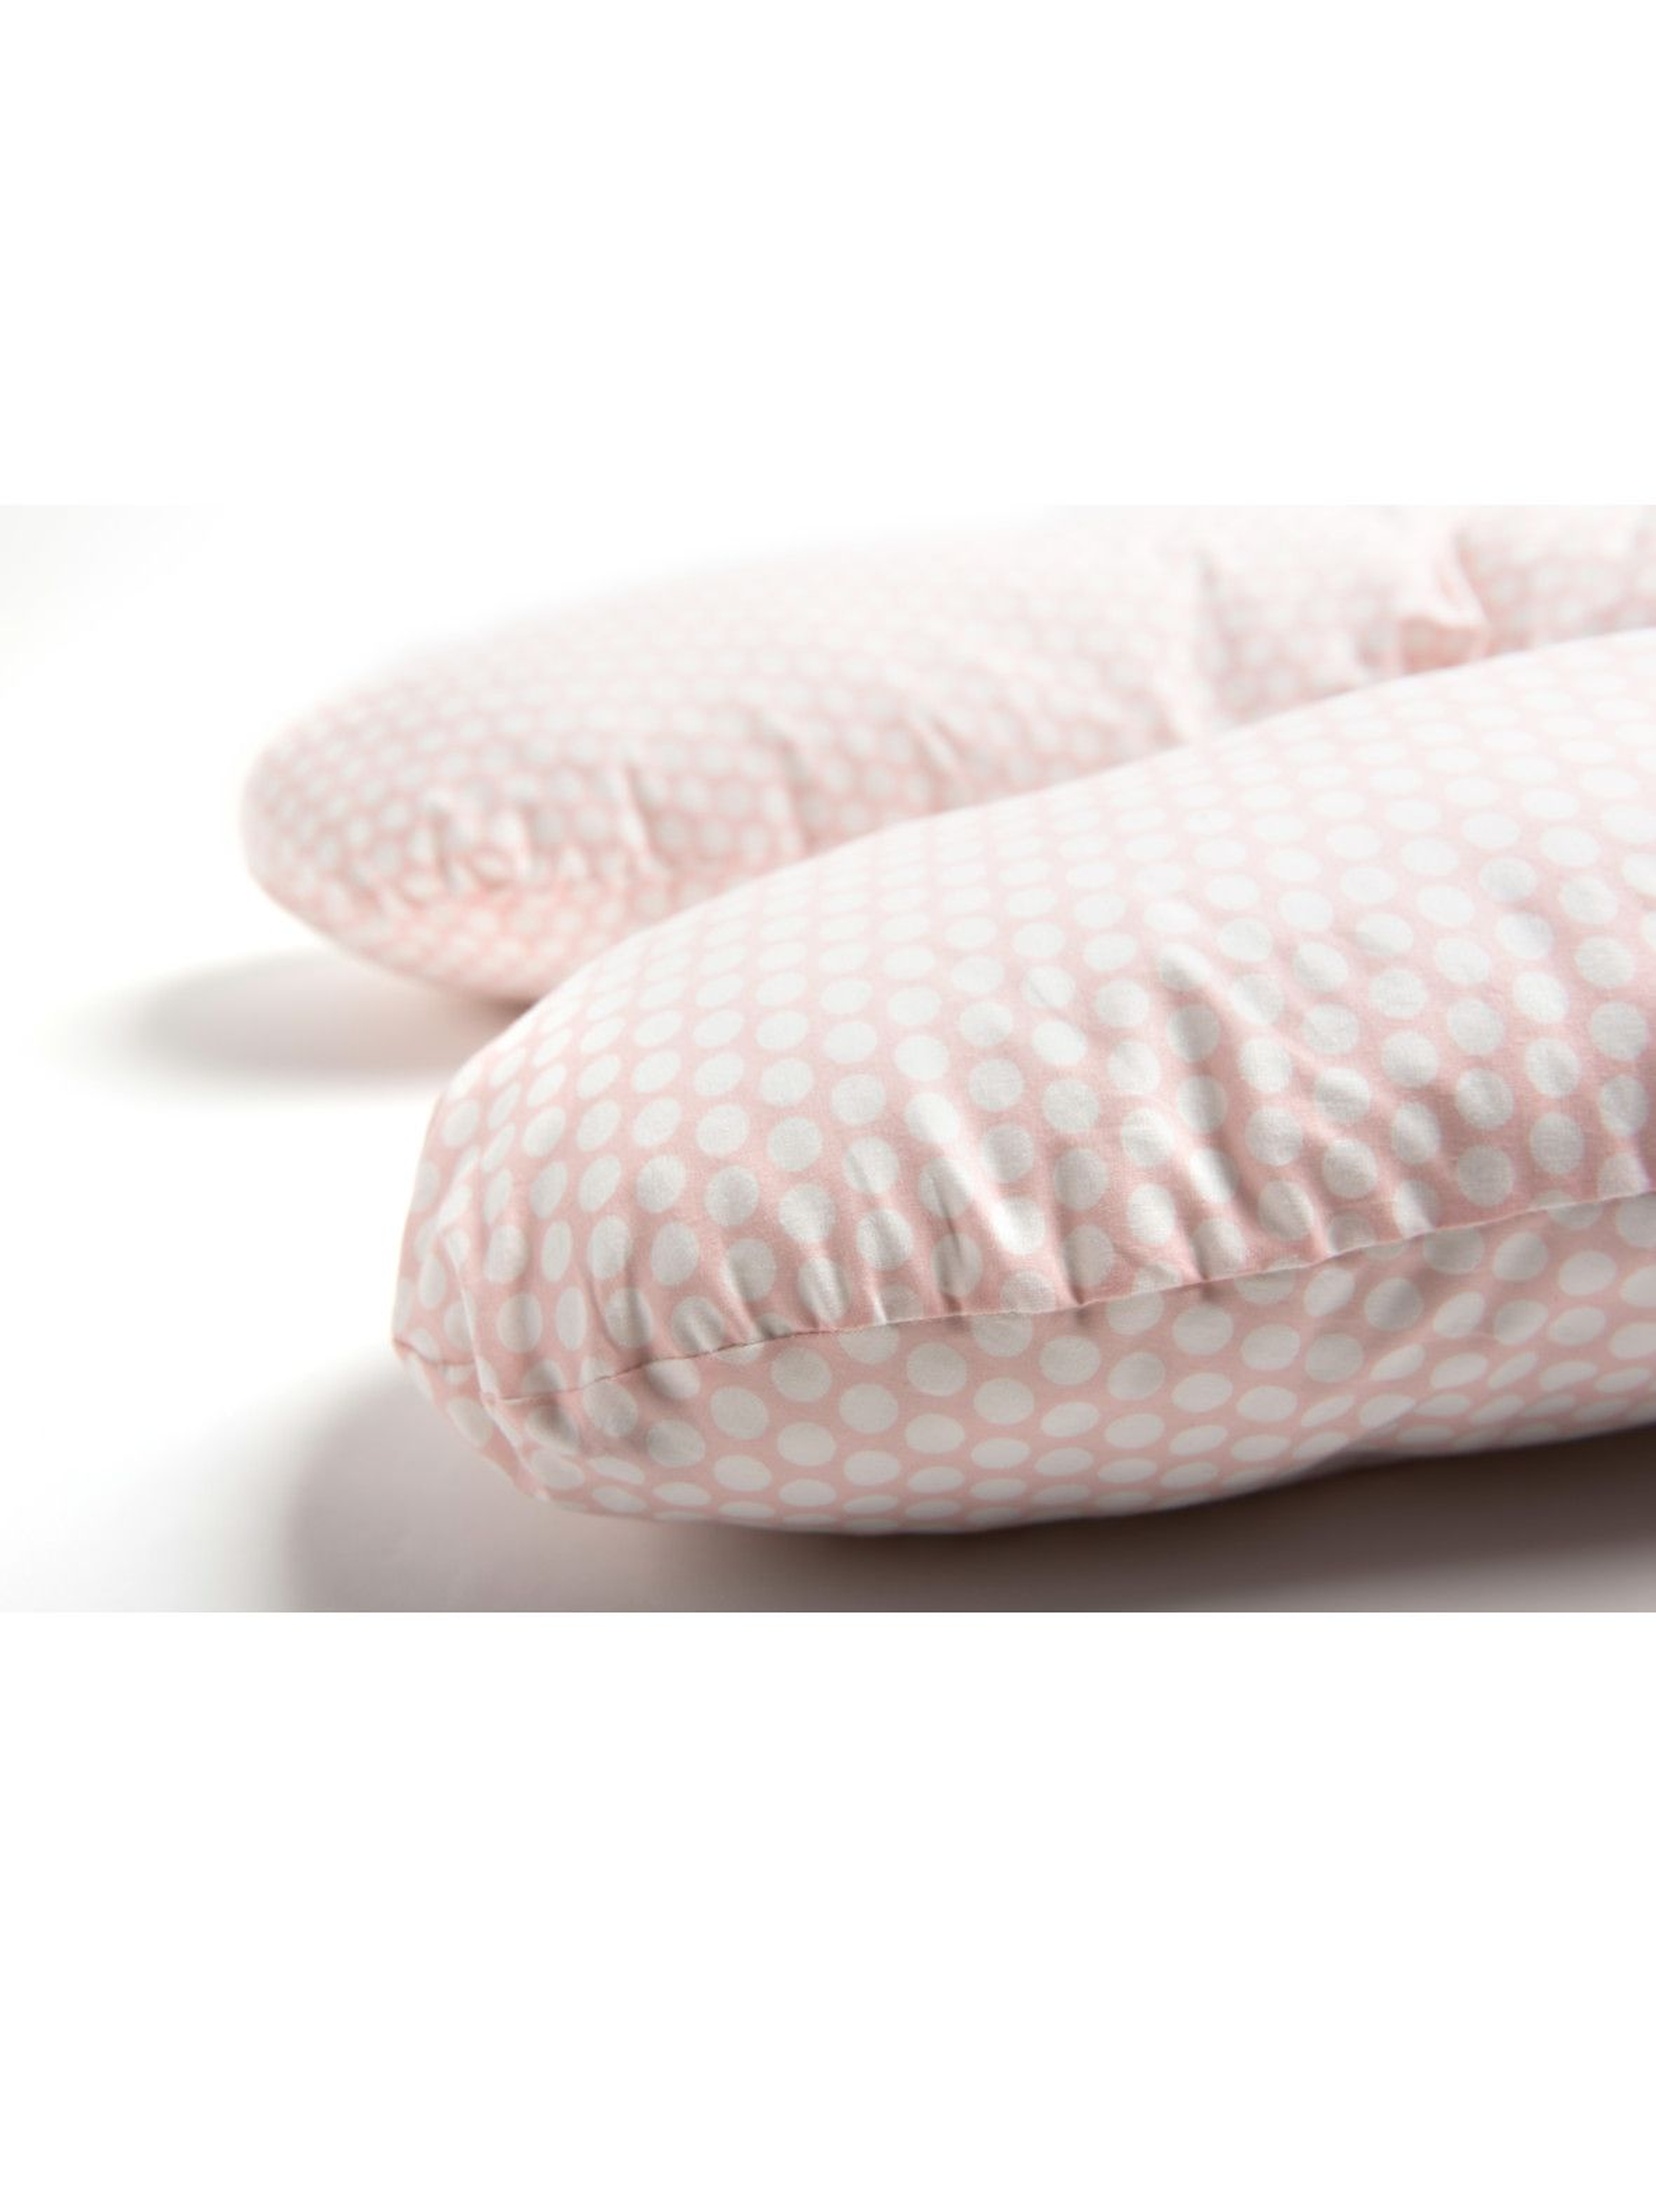 Poduszka do karmienia Comfort Exclusive  grochy różowo-białe 170 cm